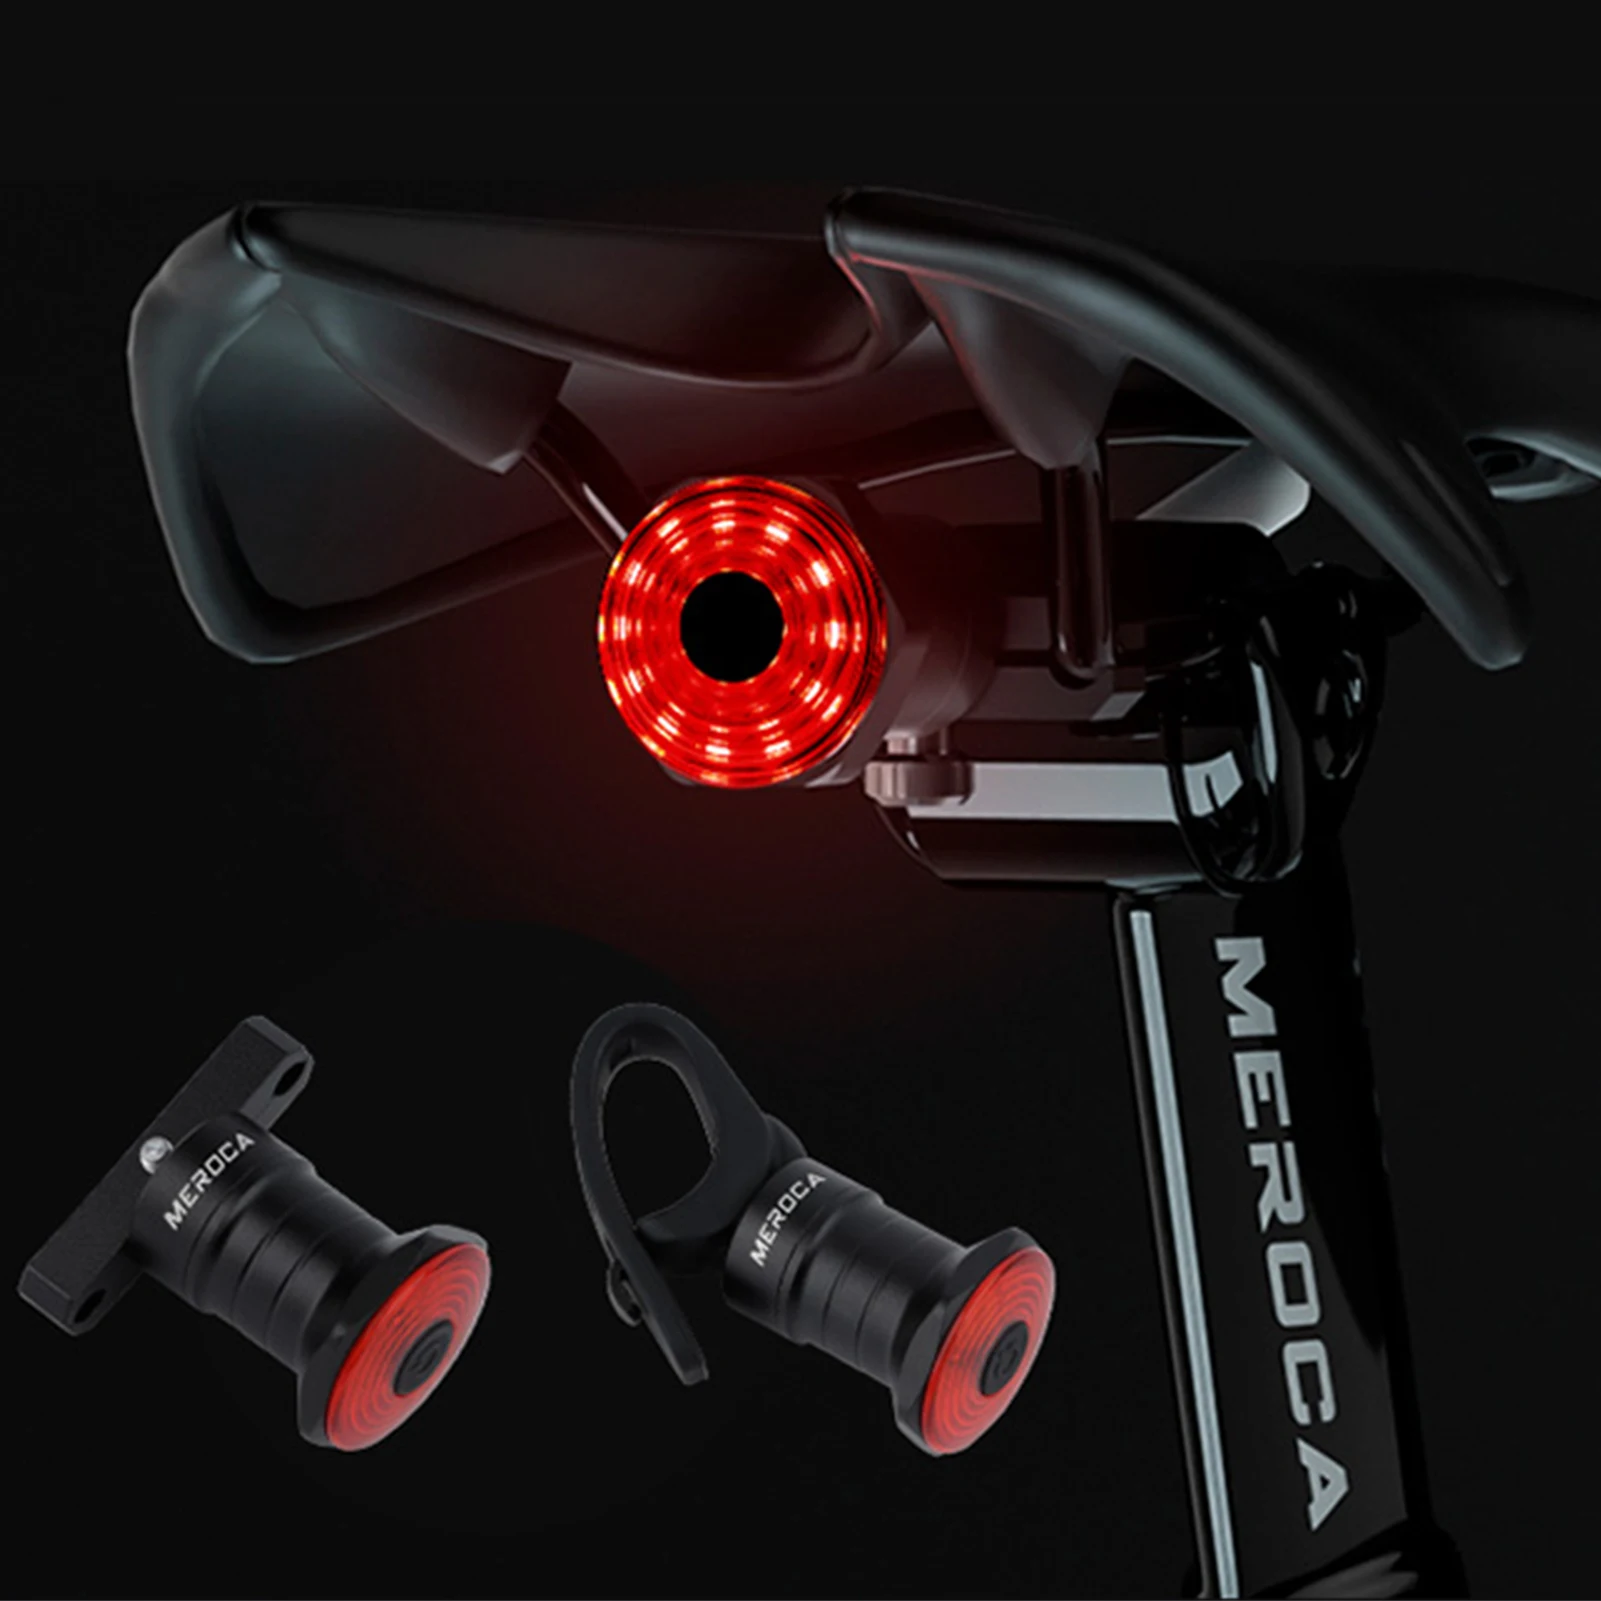 

2 Стиль умный задний фонарь для велосипеда с возможностью задний светильник Авто старт/стоп-сигнал IPX6 Водонепроницаемый USB зарядка Велоспор...